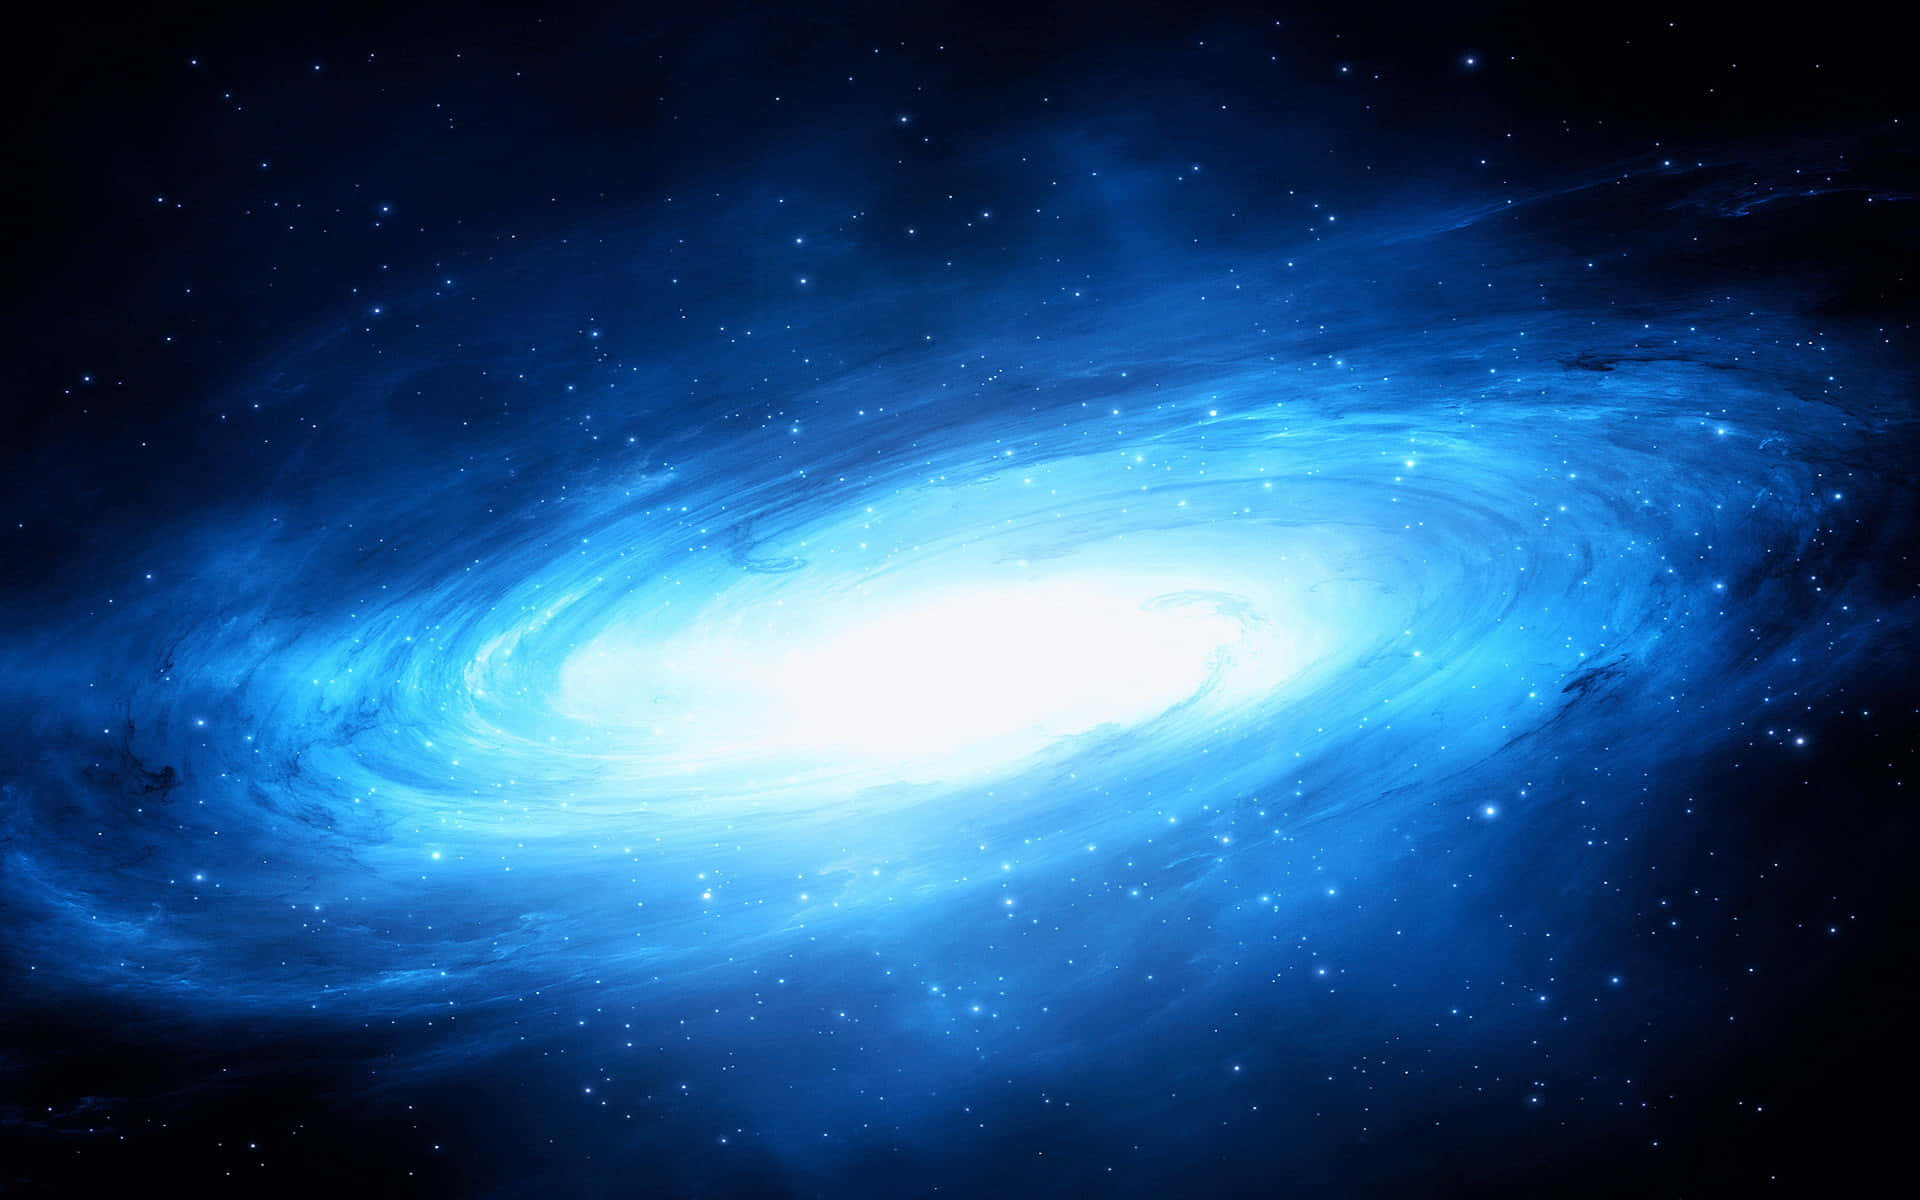 Unaimagen Impresionante De Una Majestuosa Galaxia Azul.